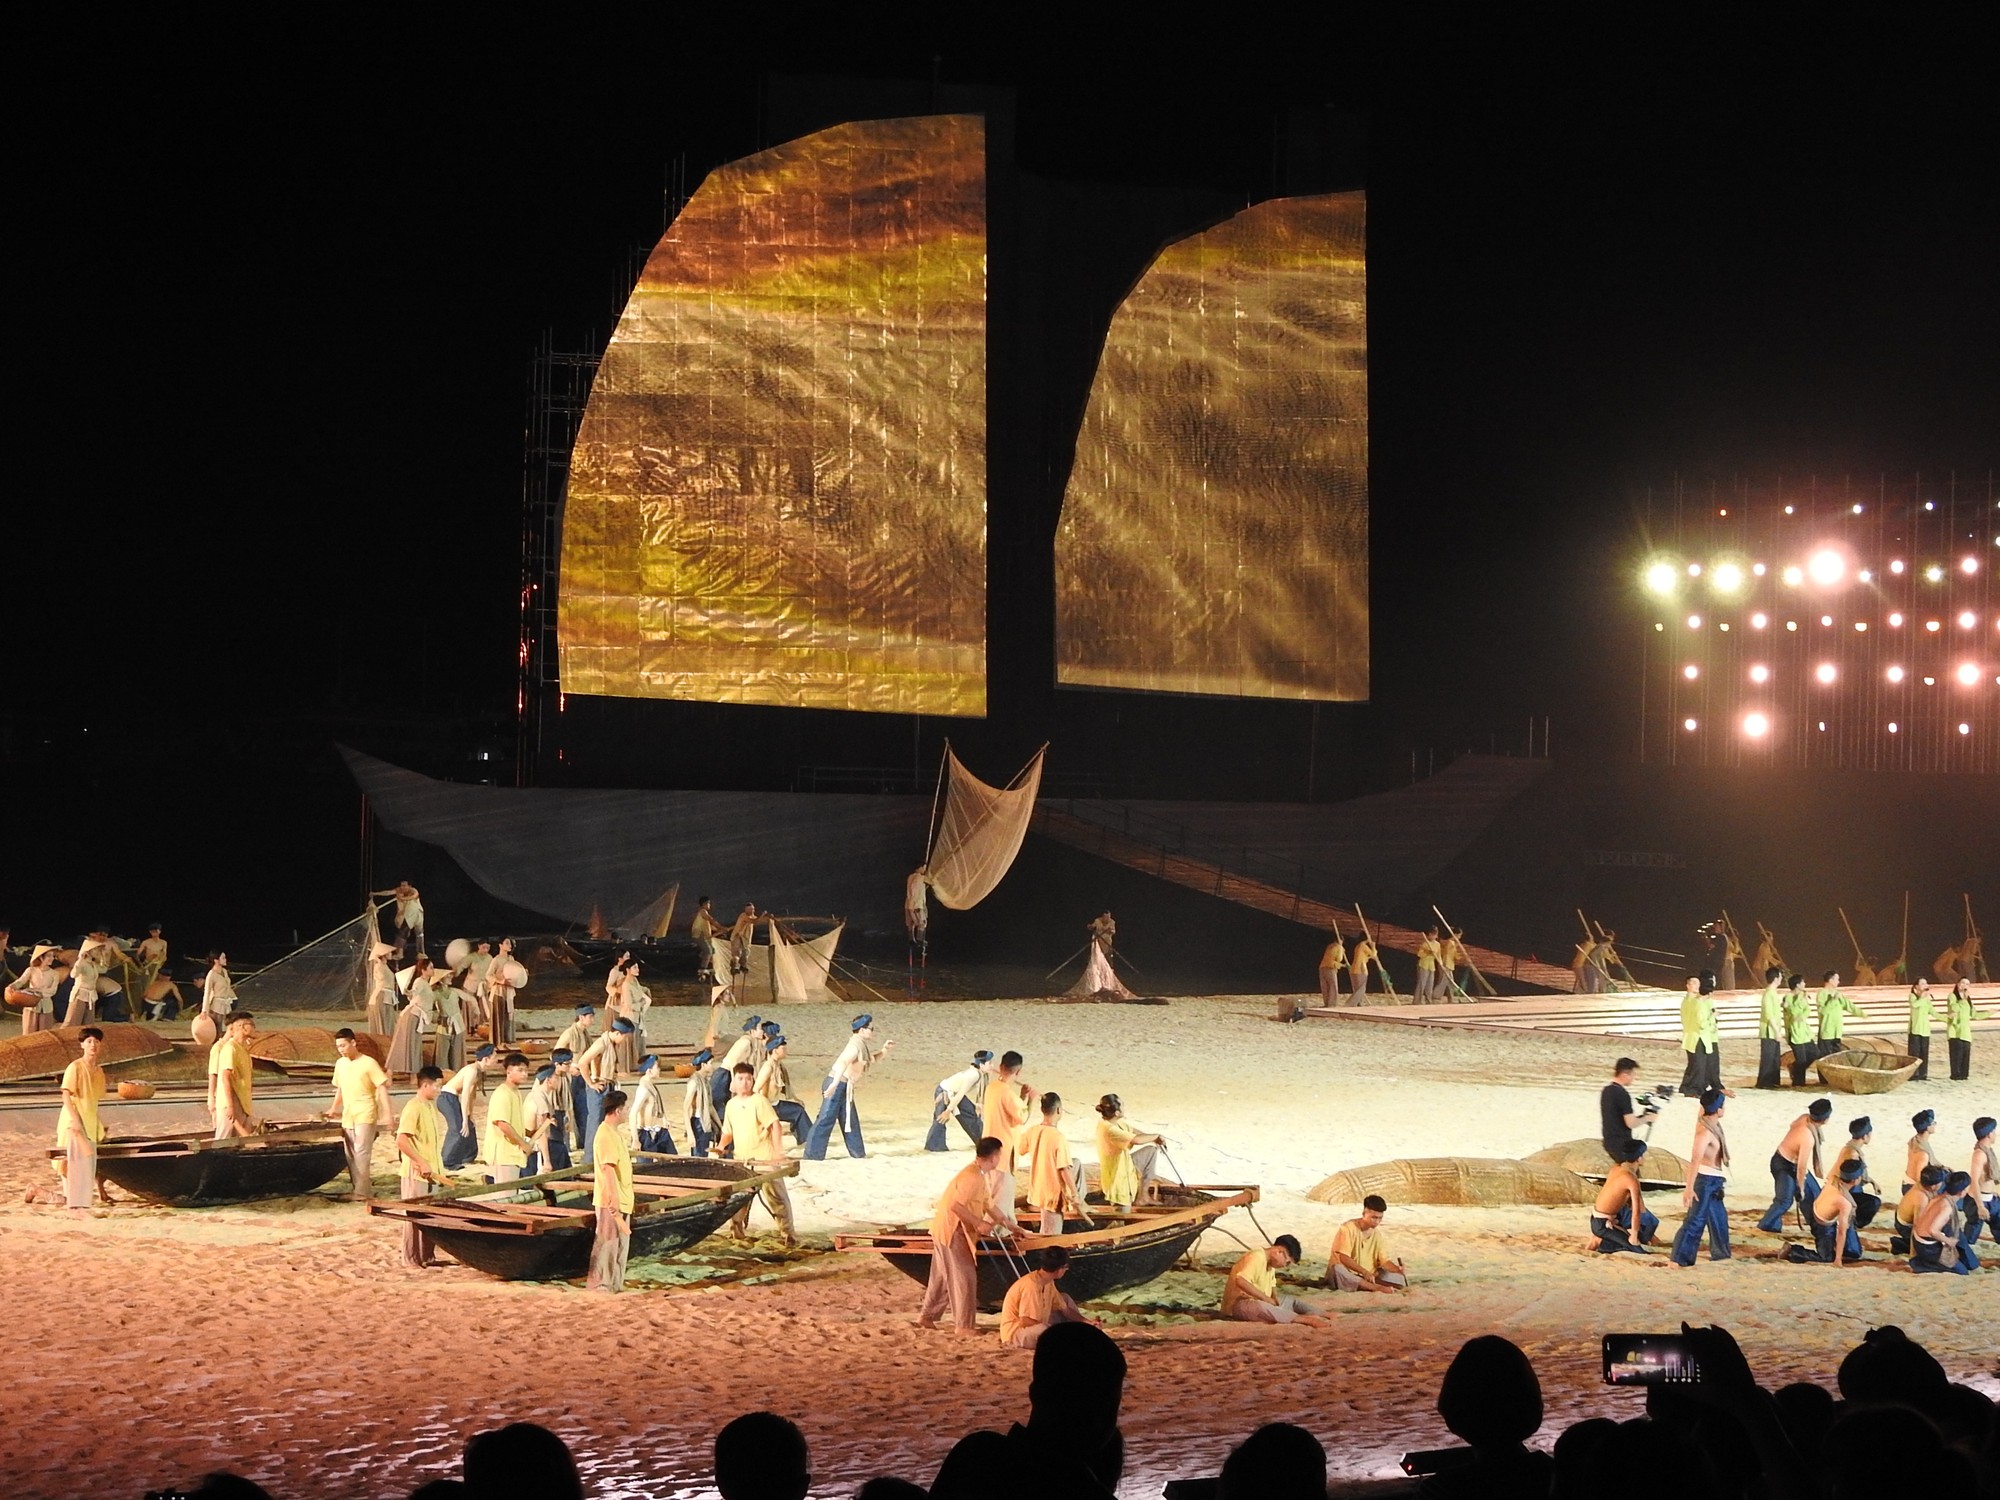 Màn biểu diễn thực cảnh 'Làng chài' và 'Trai biển' với các lớp sân khấu trải dài trên bãi cát và mặt biển đã làm nổi bật được những nét đặc sắc của văn hóa Hạ Long xưa với những người ngư dân làm nghề chài lưới.